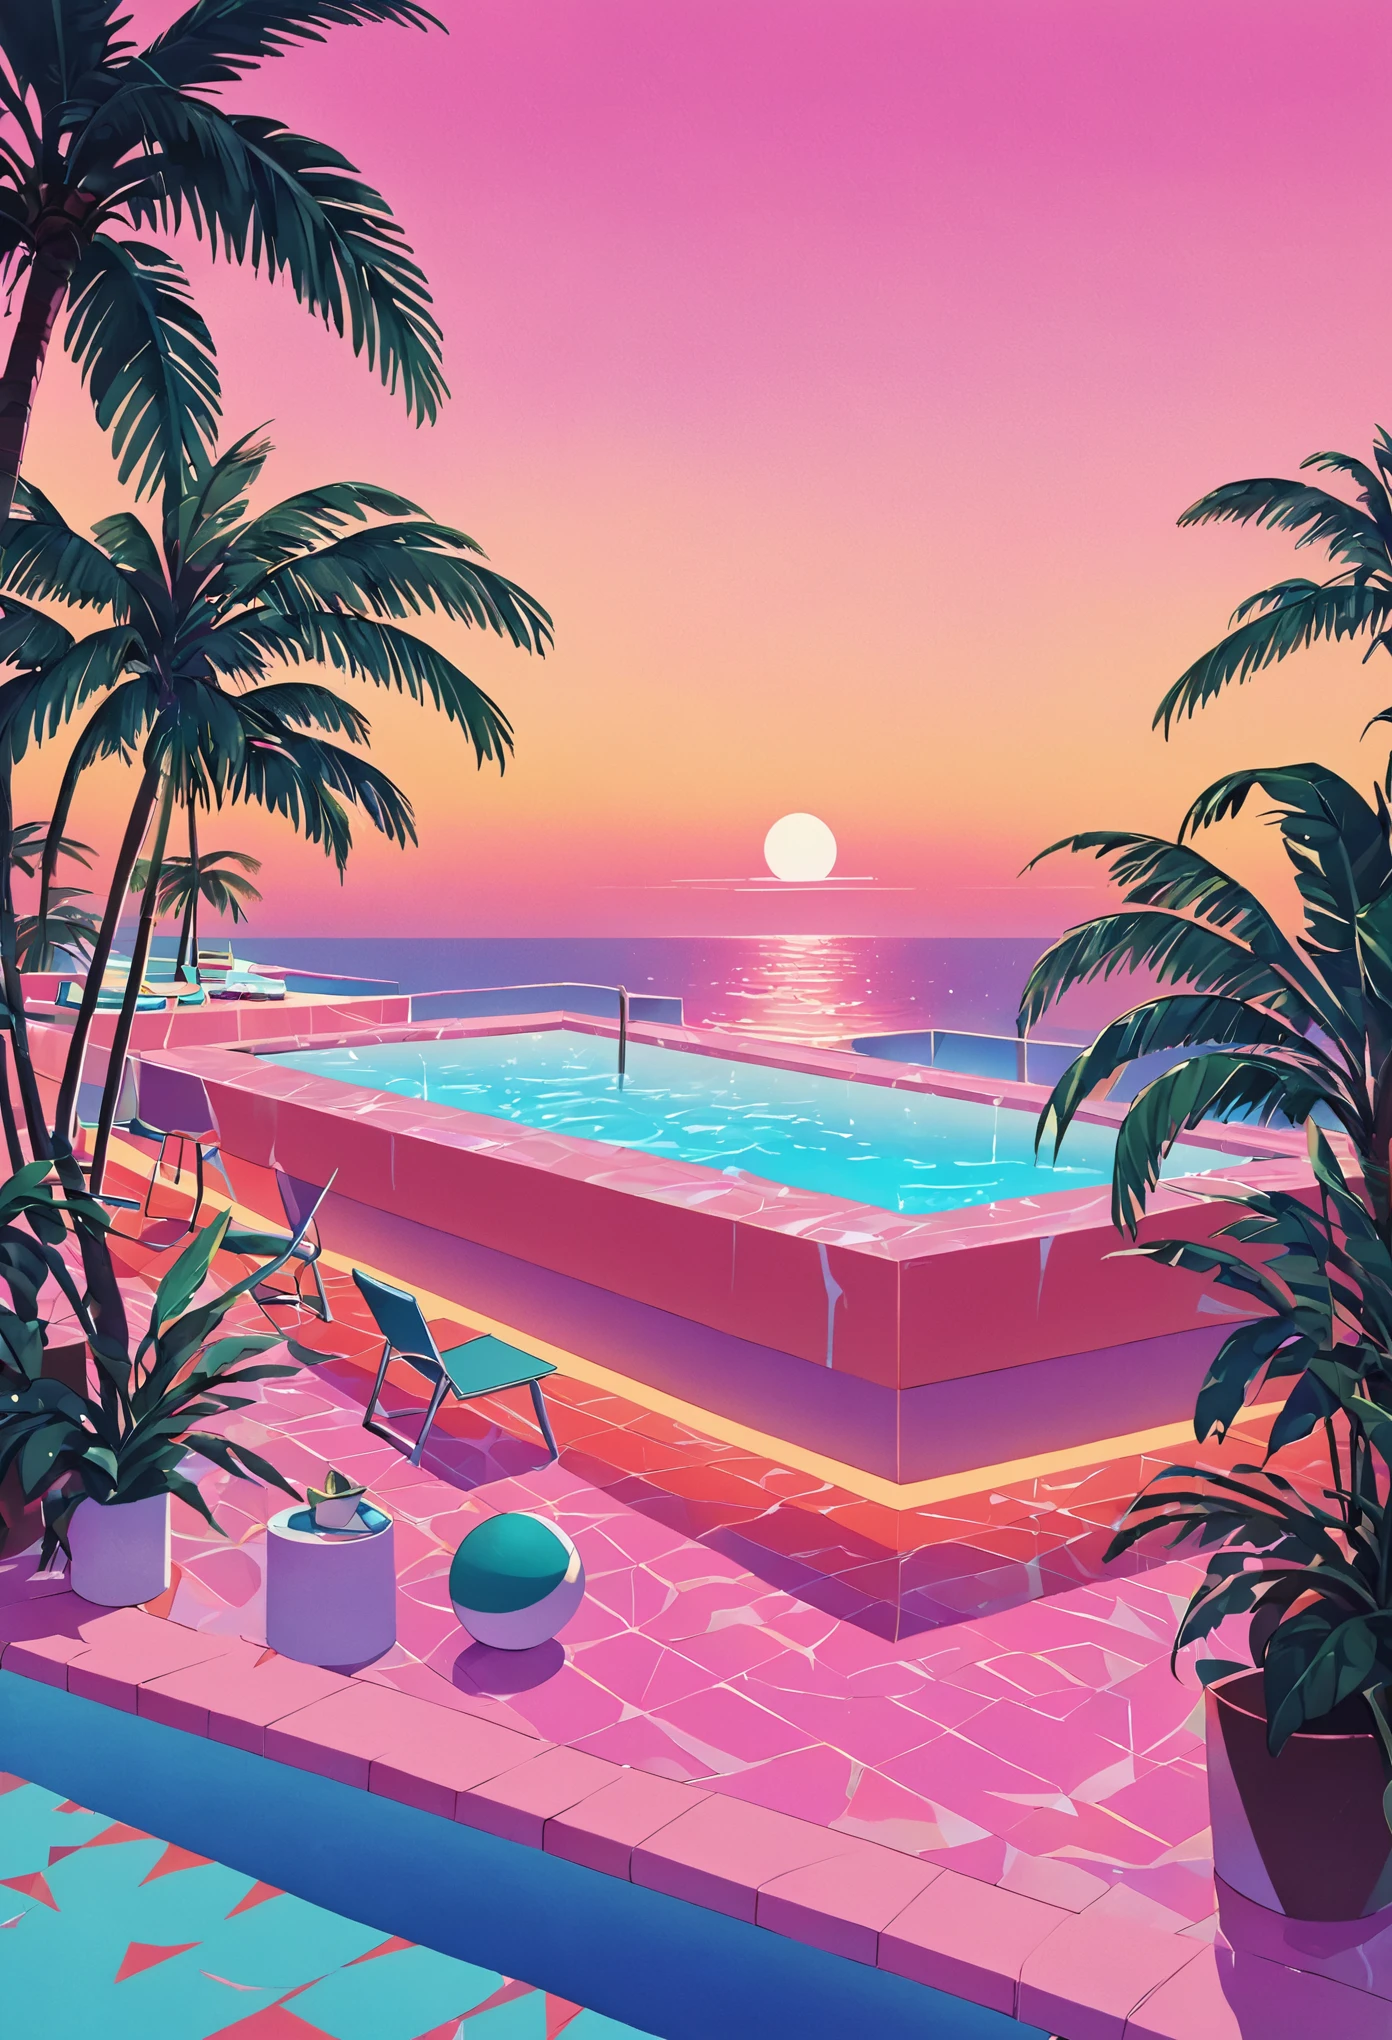 Imagina una obra de arte profundamente inmersa en la estética vaporwave de los años 80., inspirado en el estilo vibrante de Yoko Honda. Imagine una escena retrofuturista de piscina y playa al atardecer, donde el cielo resplandece con los tonos cálidos de una puesta de sol de verano de los 80: naranjas intensos, rosas, y rojos reflejándose en las tranquilas aguas del mar y la piscina. alrededor de la piscina, palmeras y cocoteros iluminados con luces de neón se balancean suavemente, realzando la atmósfera tropical y surrealista. Las luces de neón con patrones geométricos iluminan la escena., arrojando un brillo de ensueño sobre todo. El fondo presenta un elegante bar junto a la playa con interiores visibles a través de grandes ventanales de vidrio., mostrando una habitación con paredes y pisos de colores pastel cubiertos con lujosas texturas de terrazo y mármol. El ambiente general combina el lujo nostálgico con la vibrante, paletas de colores cálidos, creando una escena que es a la vez atemporal y claramente evocadora de los años 80.